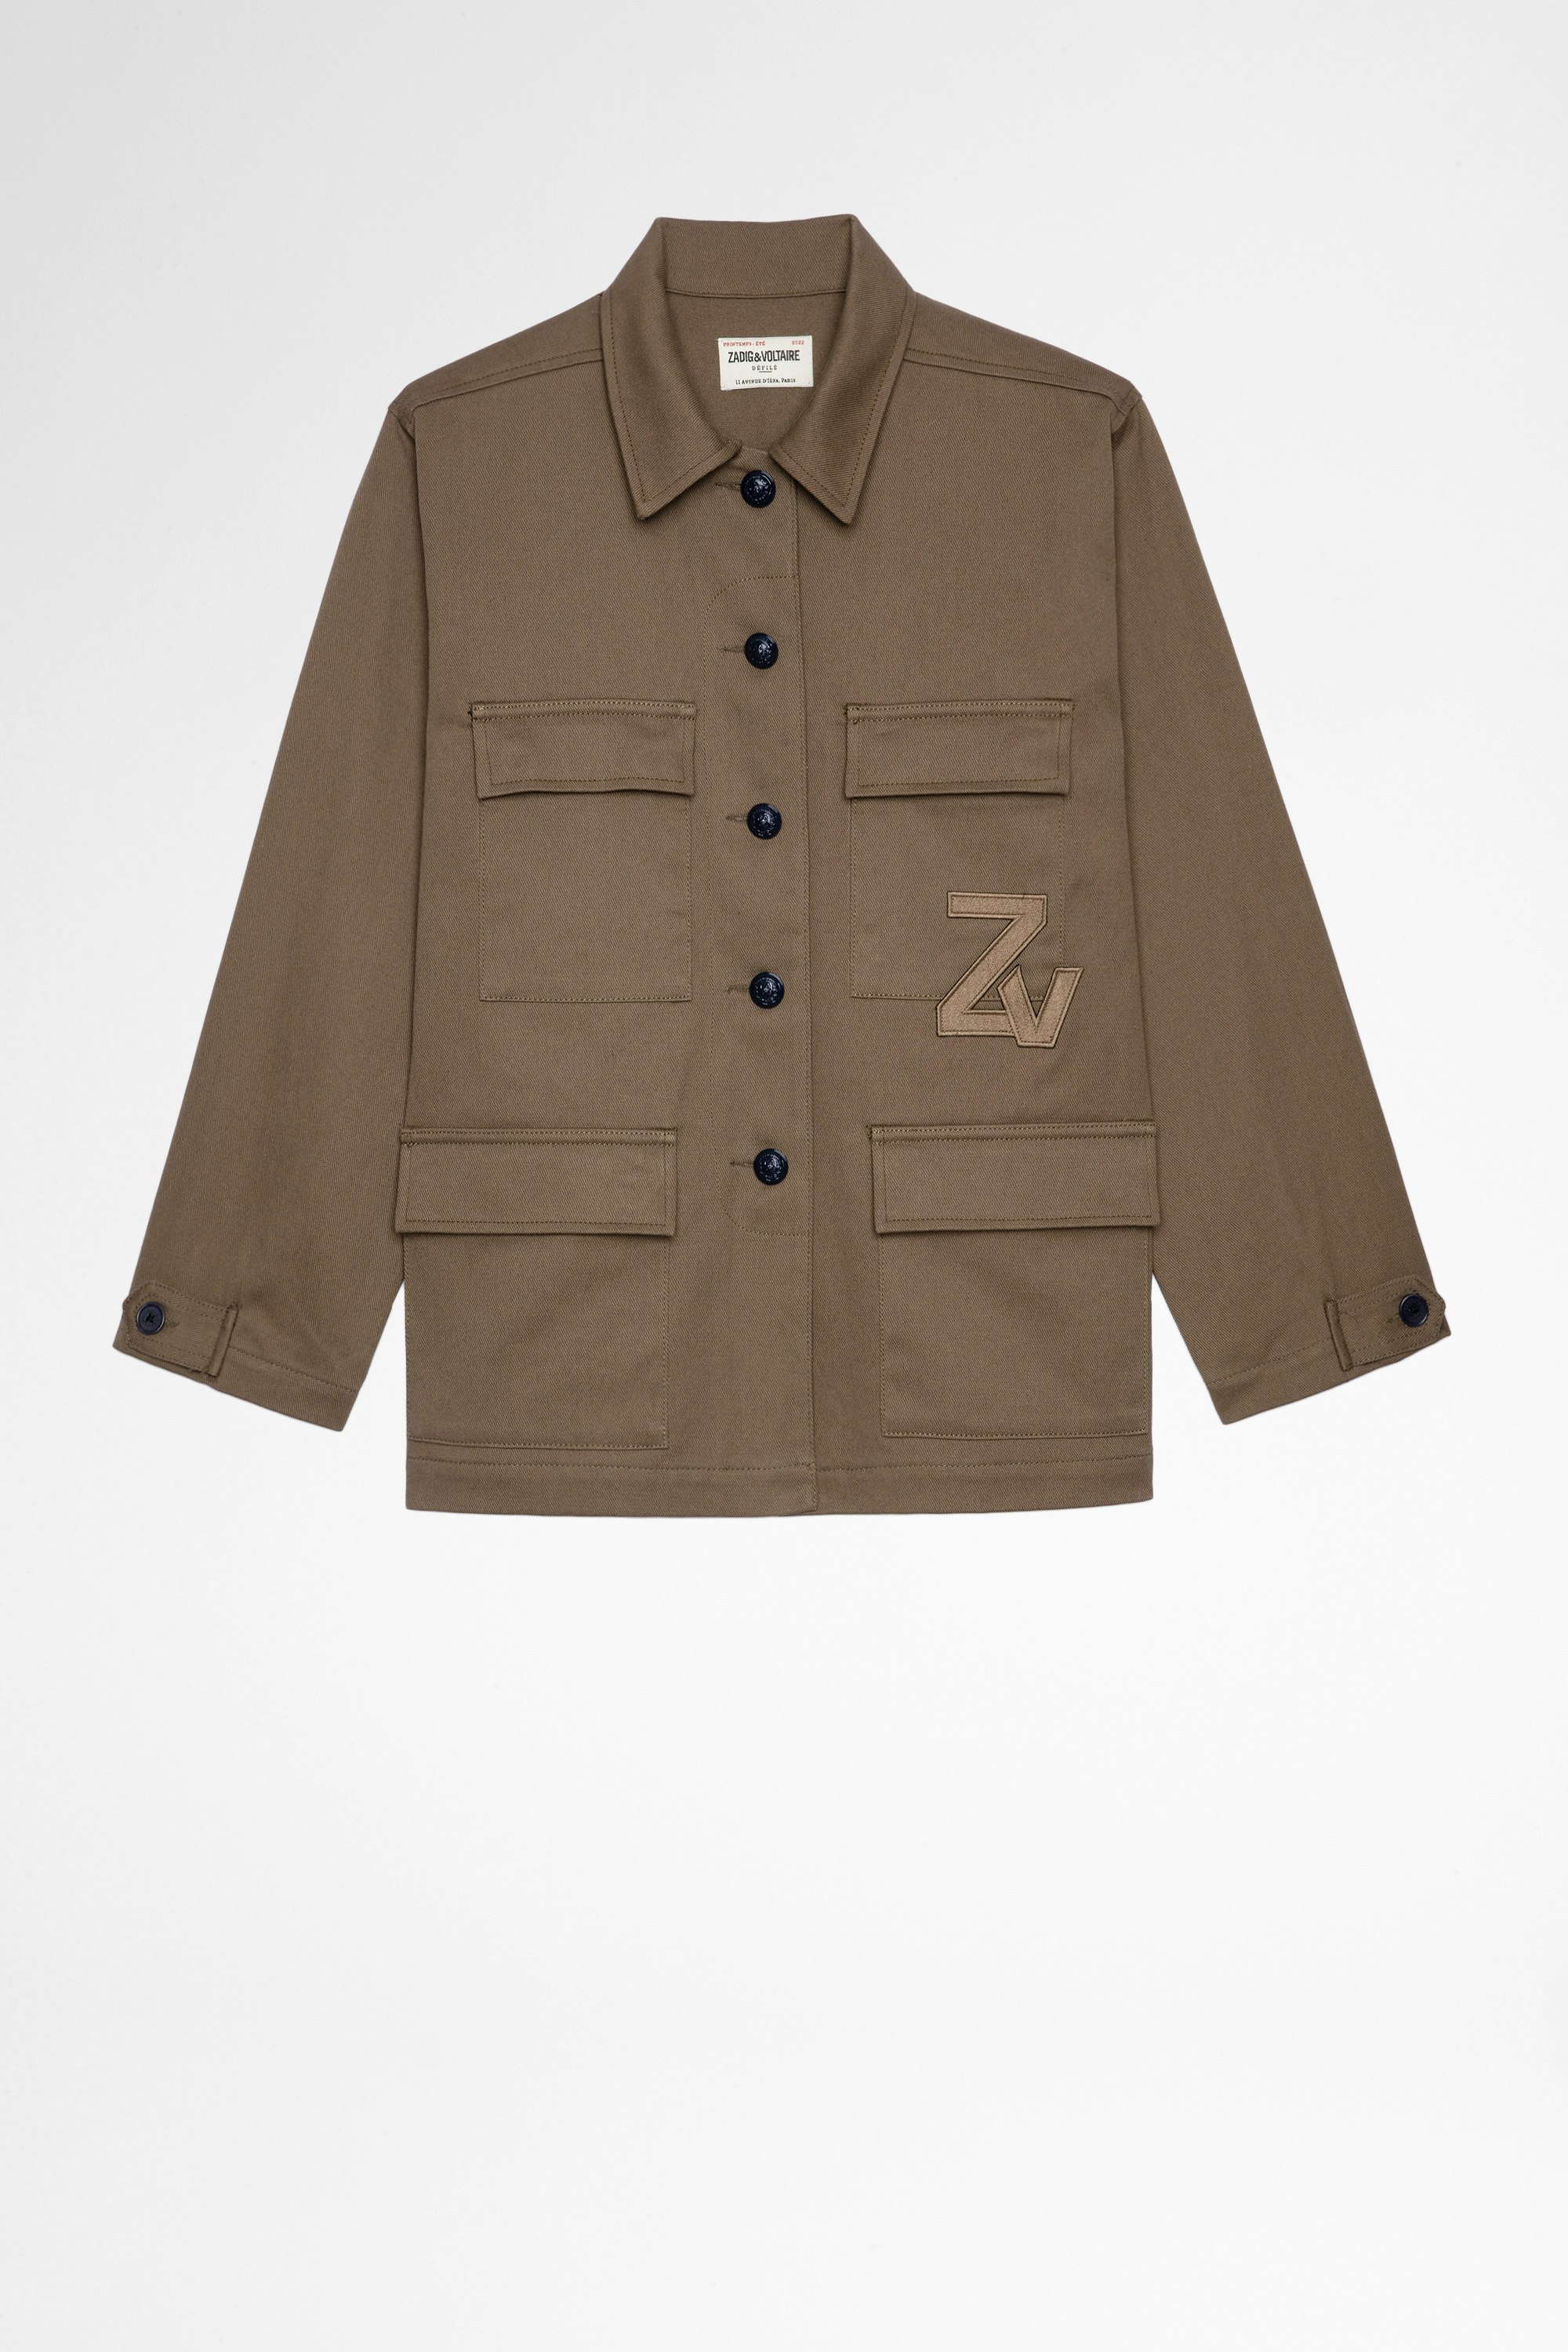 Jacke Kansas Damenjacke aus khakifarbener Baumwolle mit ZV-Patch. Hergestellt mit recycelten Fasern